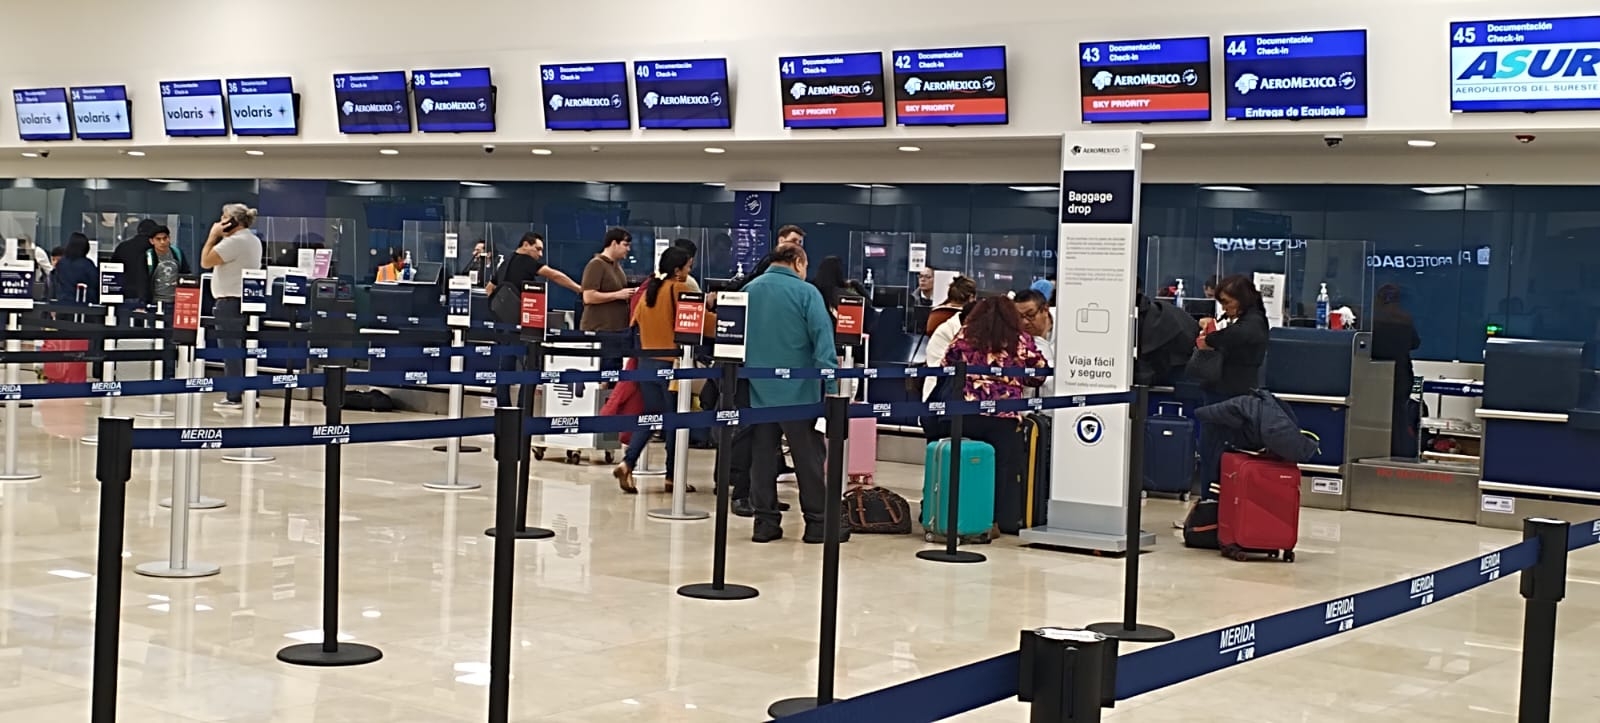 Aeroméxico cancela cuatro vuelos en el aeropuerto de Mérida este jueves